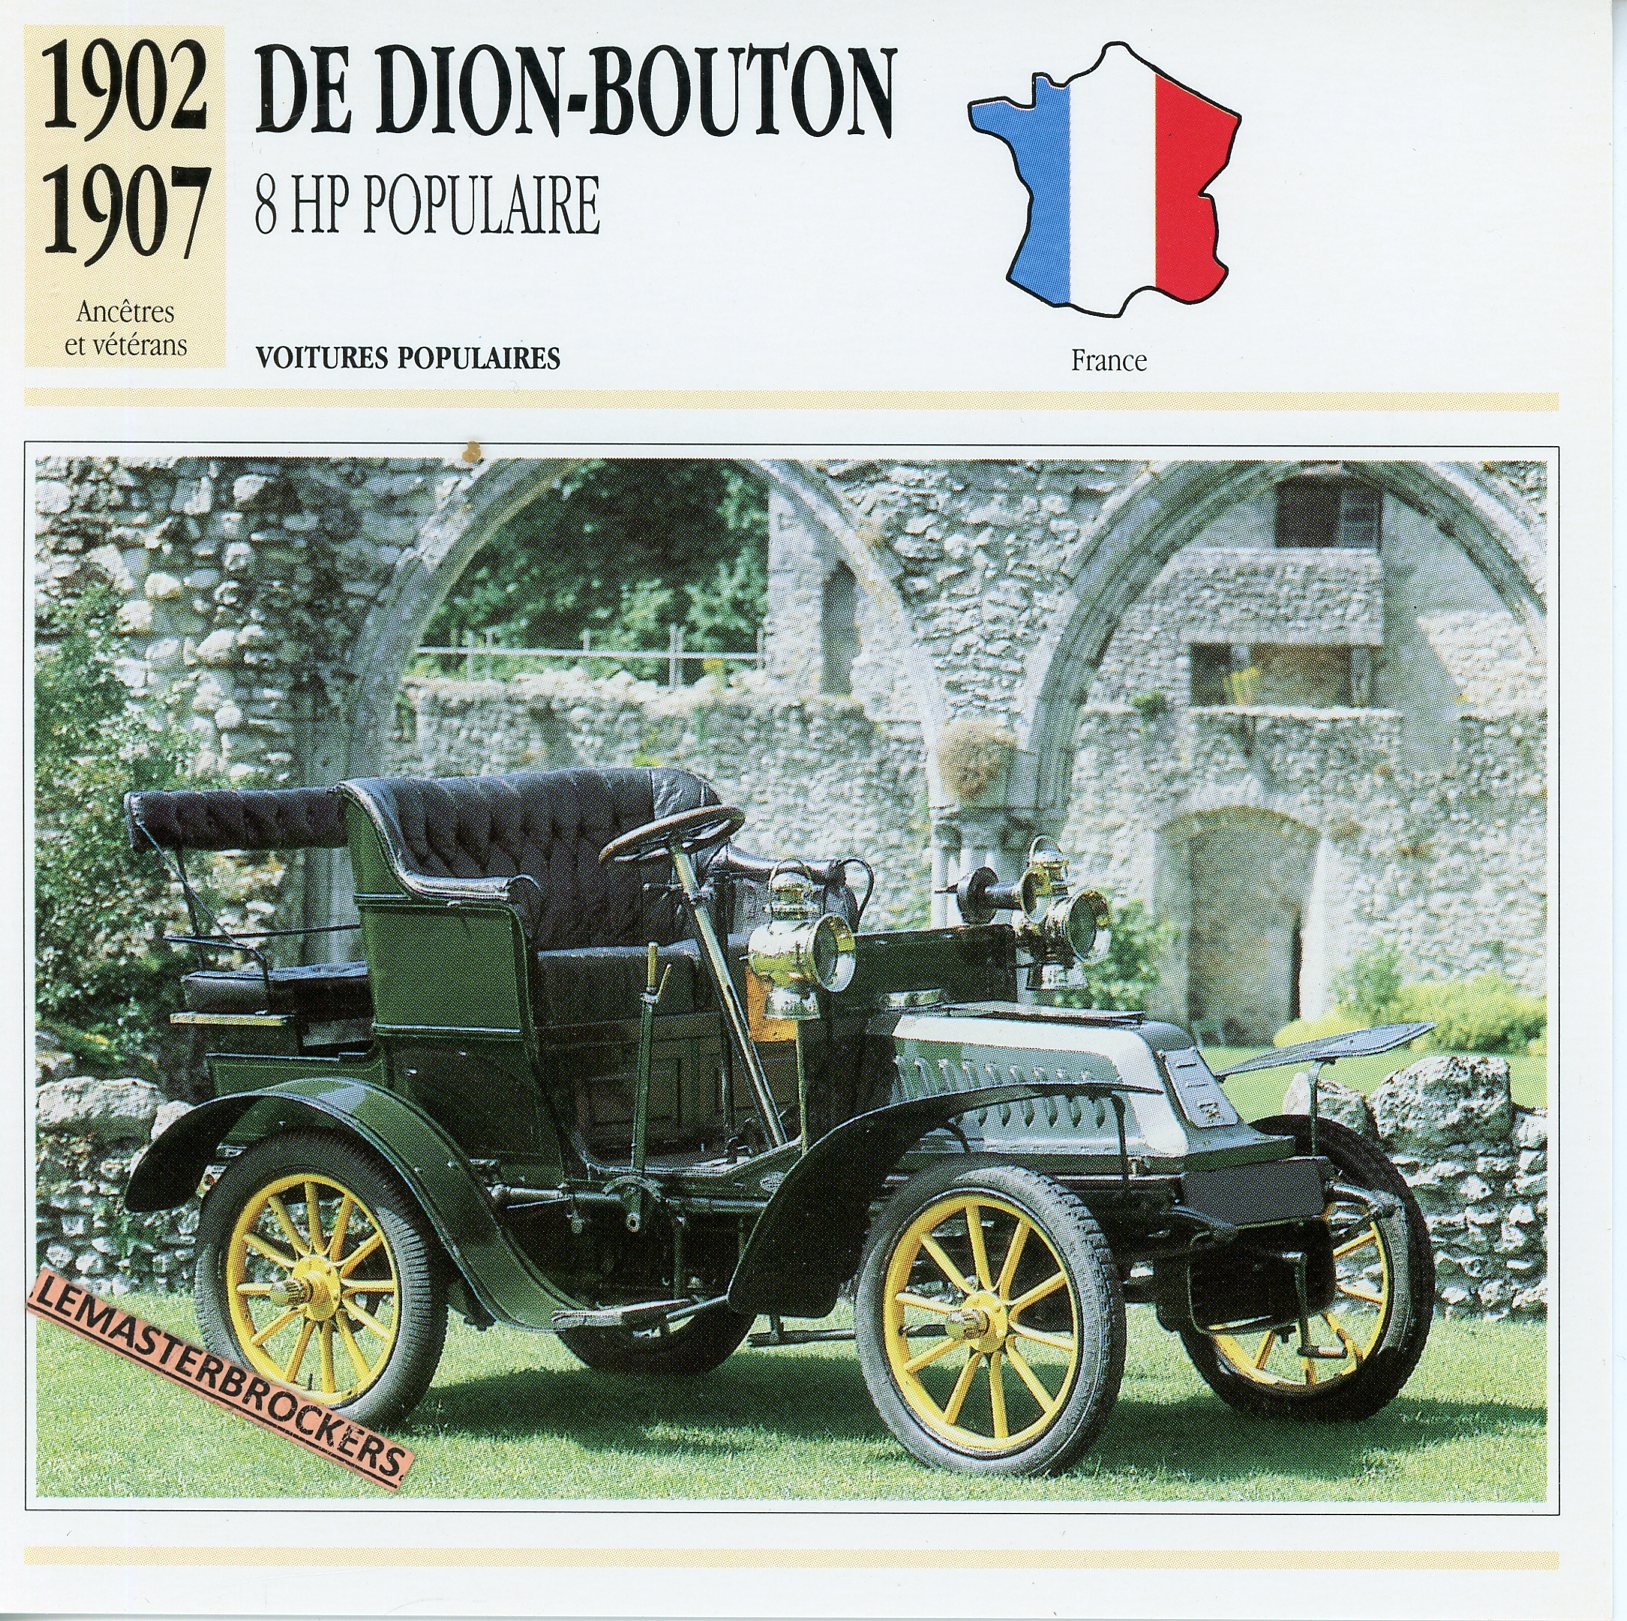 DE DION BOUTON 8HP POPULAIRE 1902 1907 - FICHE AUTO ATLAS ÉDITION